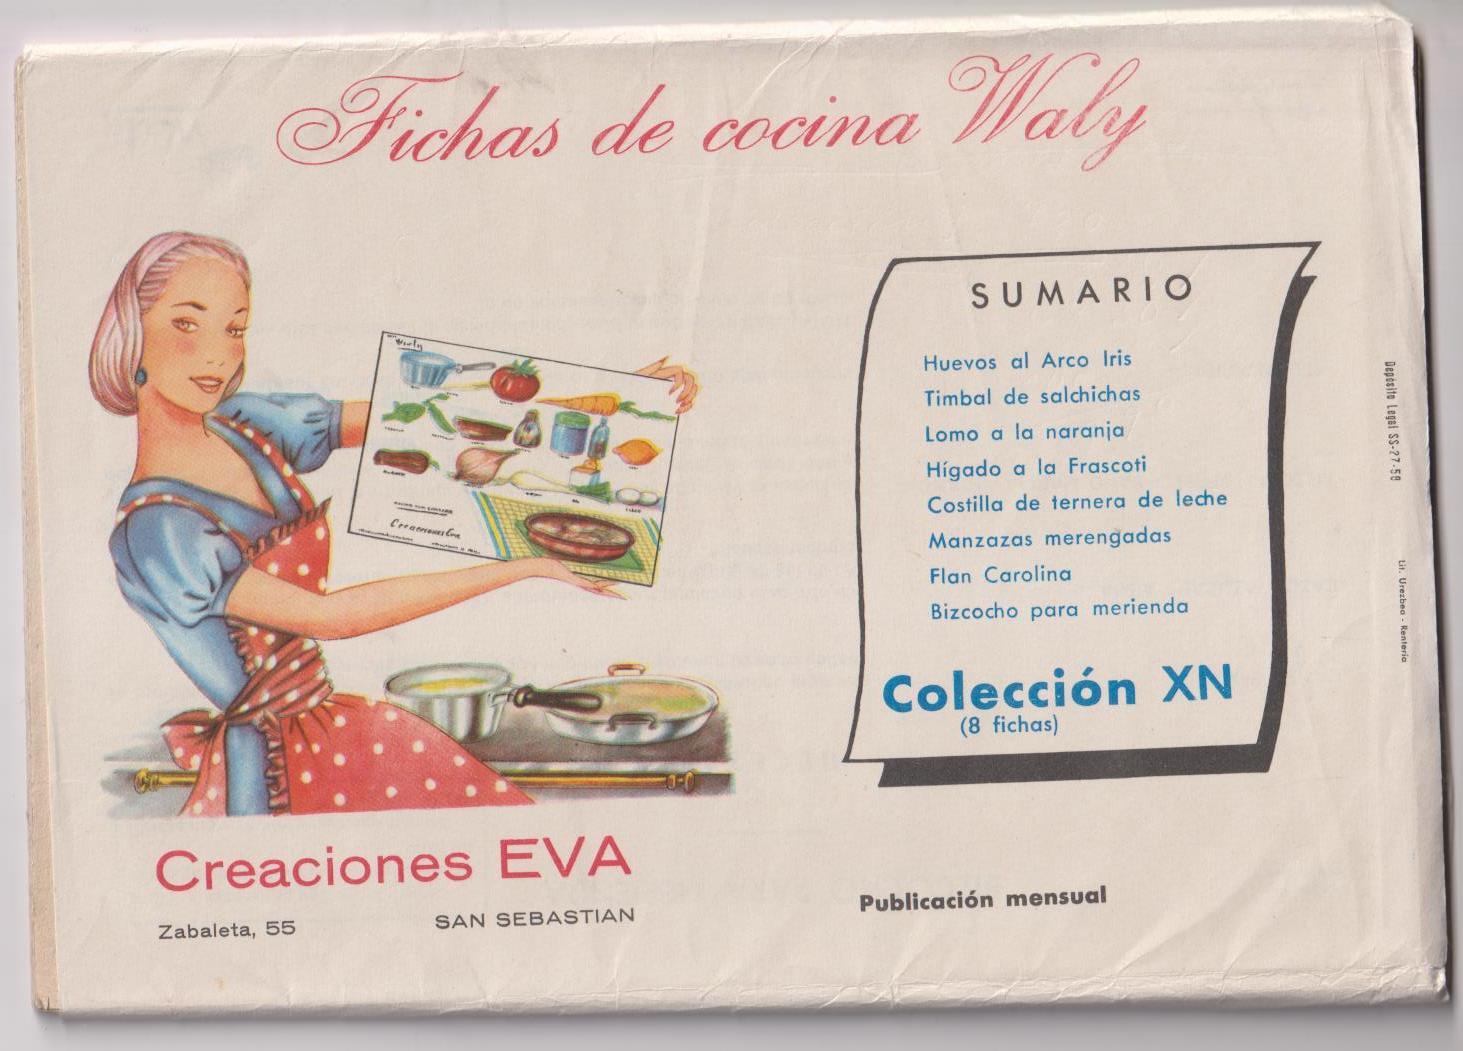 Fichas de Cocina Waly. Creaciones Eva. Colección XN. 8 fichas. Año 1958